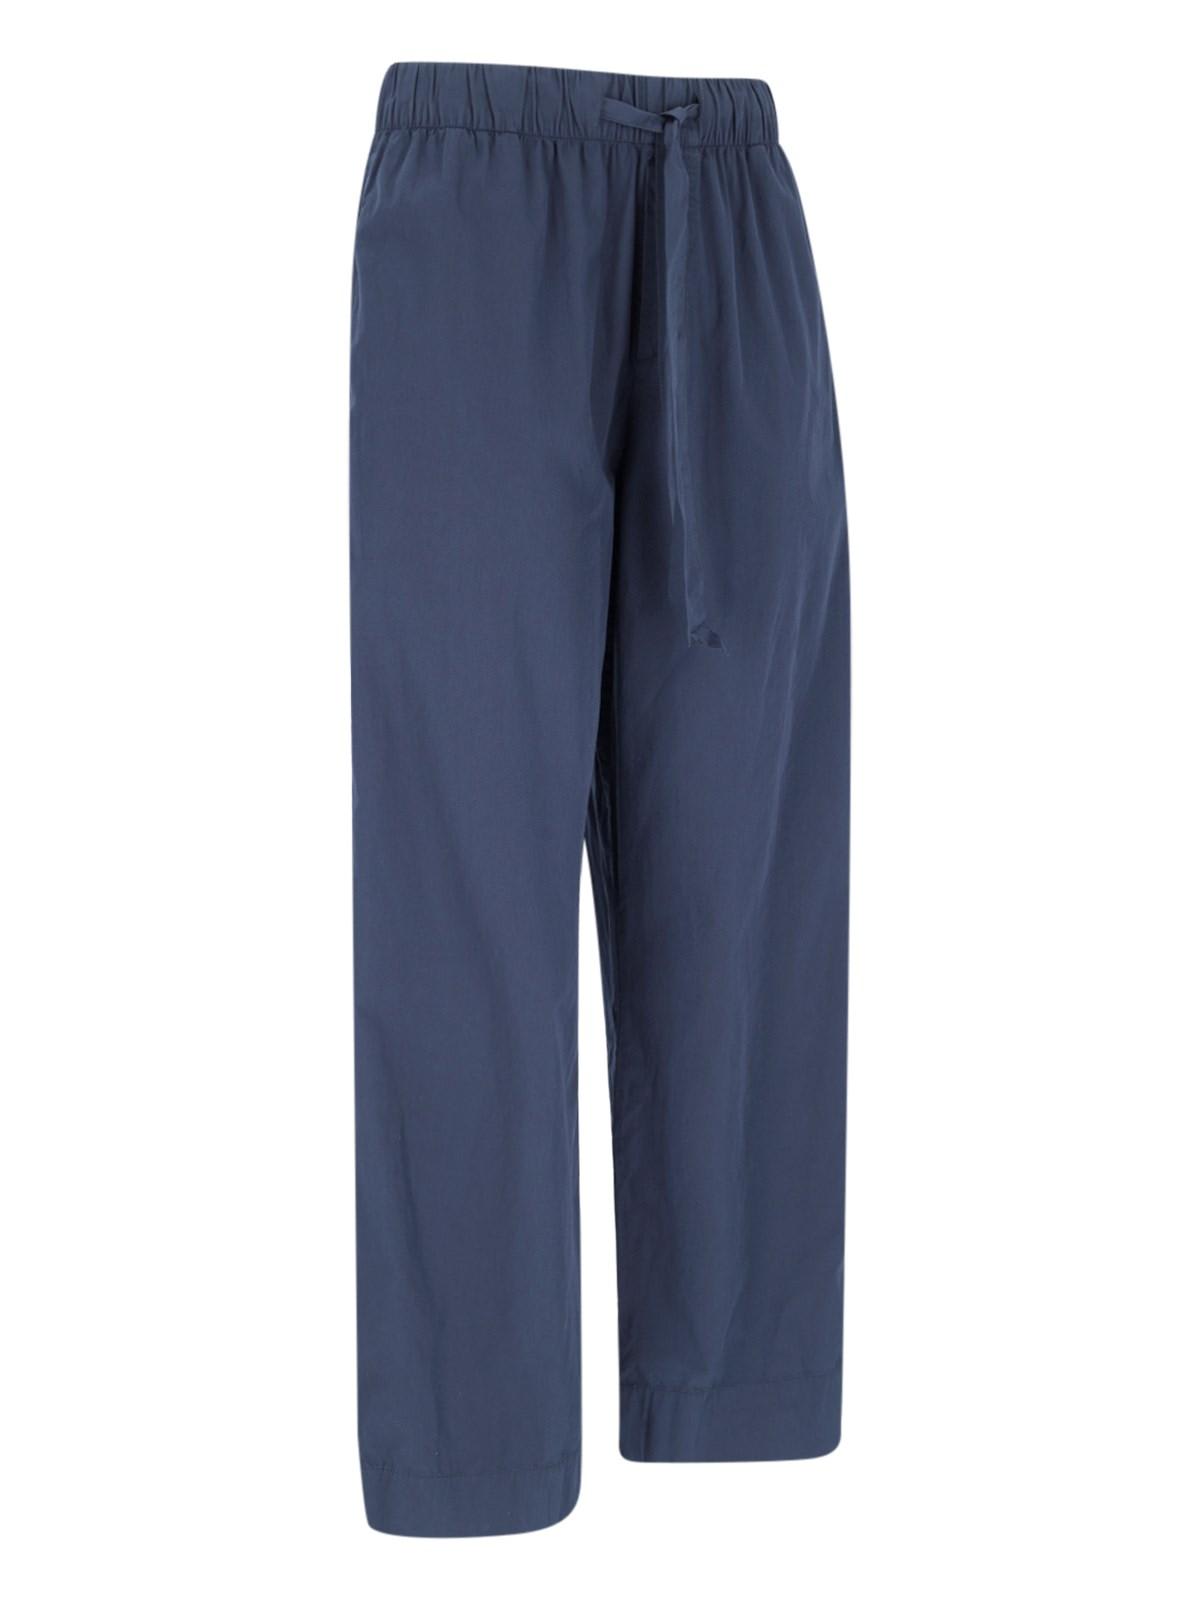 Shop Tekla True Navy Pants